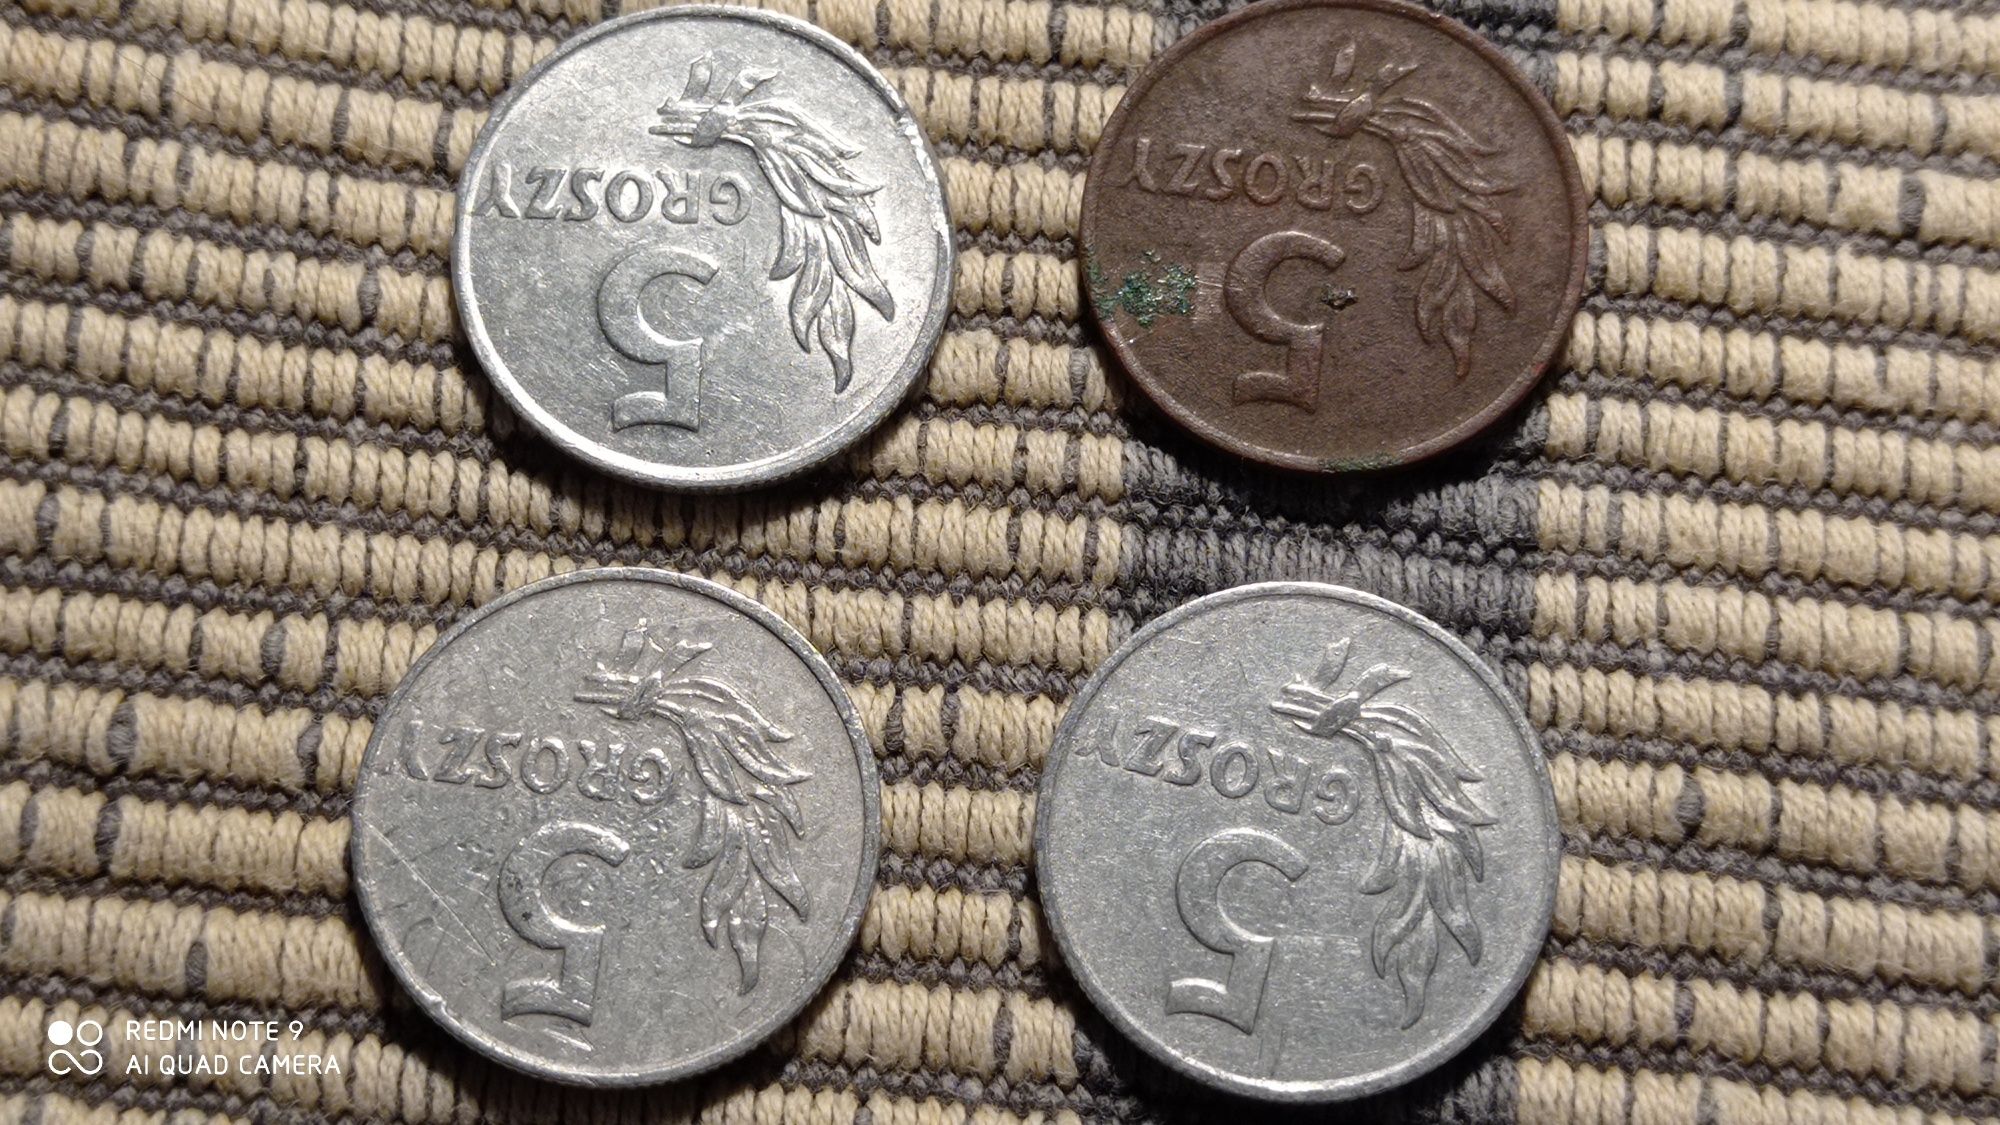 Stare monety że znakiem mennicy i bez